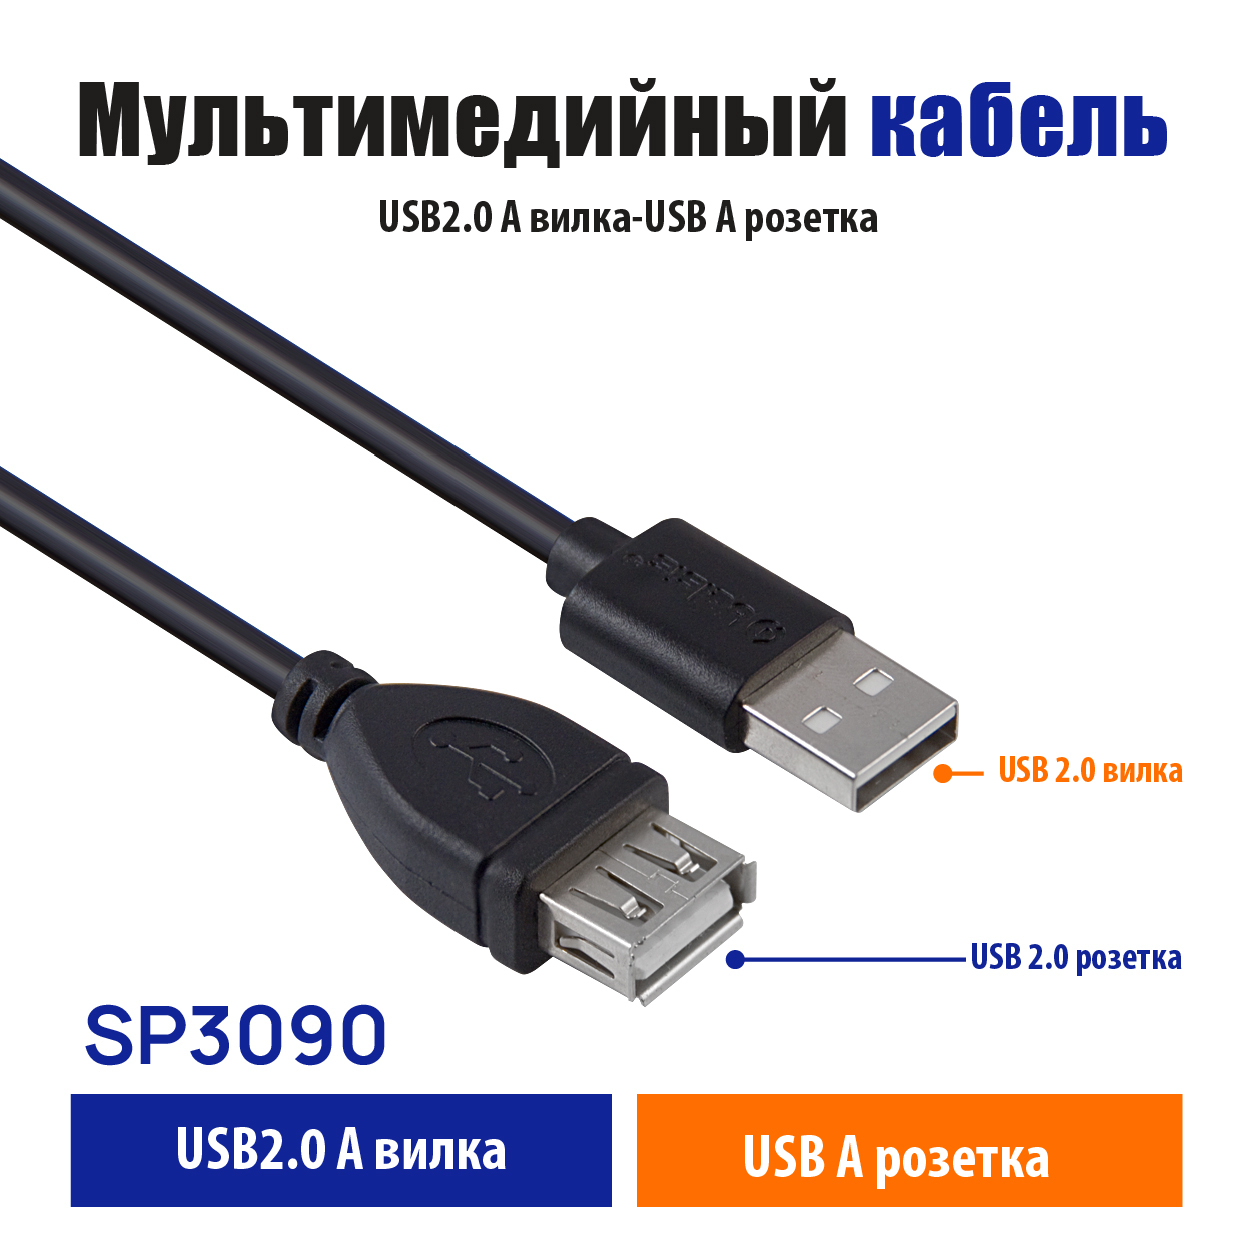 BelsisКабельдляподключенияпериферийныхустройствUSB2.0Type-A/USB2.0Type-A,1.8м,черный